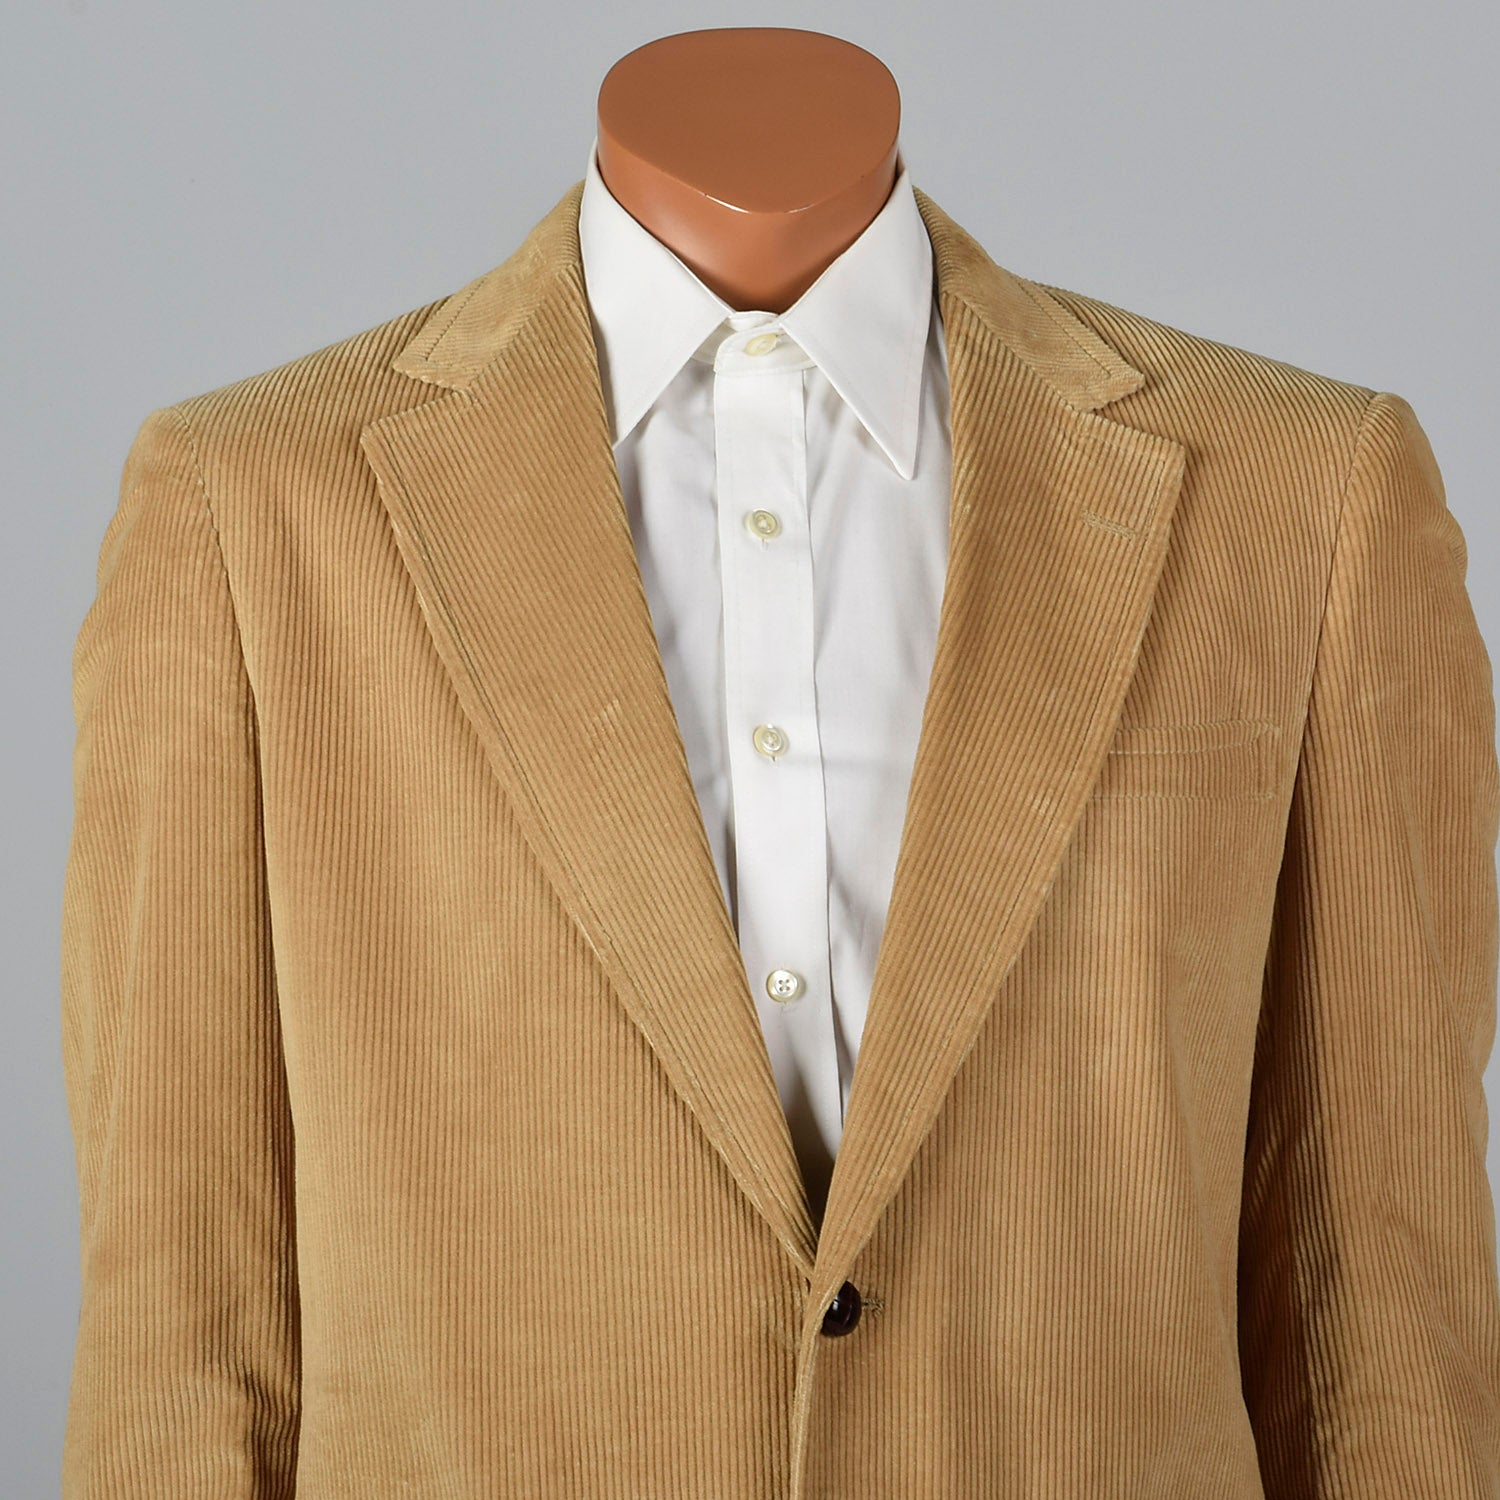 Medium 1970s Tan 2Pc Suit